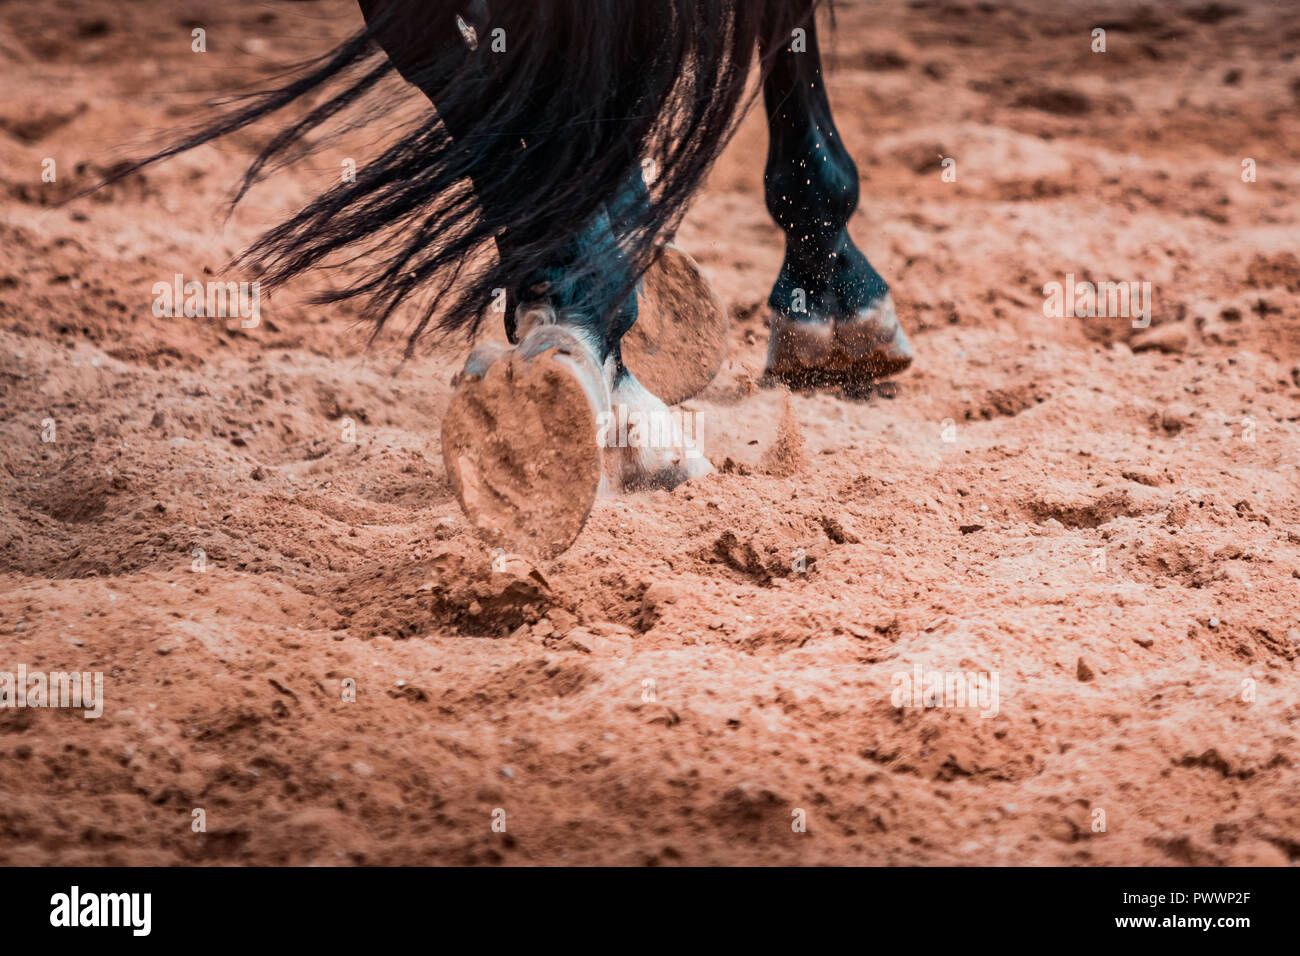 Wilde Pferde wild galoppierenden in einem Rodeo zeigen. Details und auf Füße, Sand, Staub, Schmutz und Bewegungsunschärfe konzentrieren. Verschwommenes Bild Hintergrund, warmer Beleuchtung, sh Stockfoto